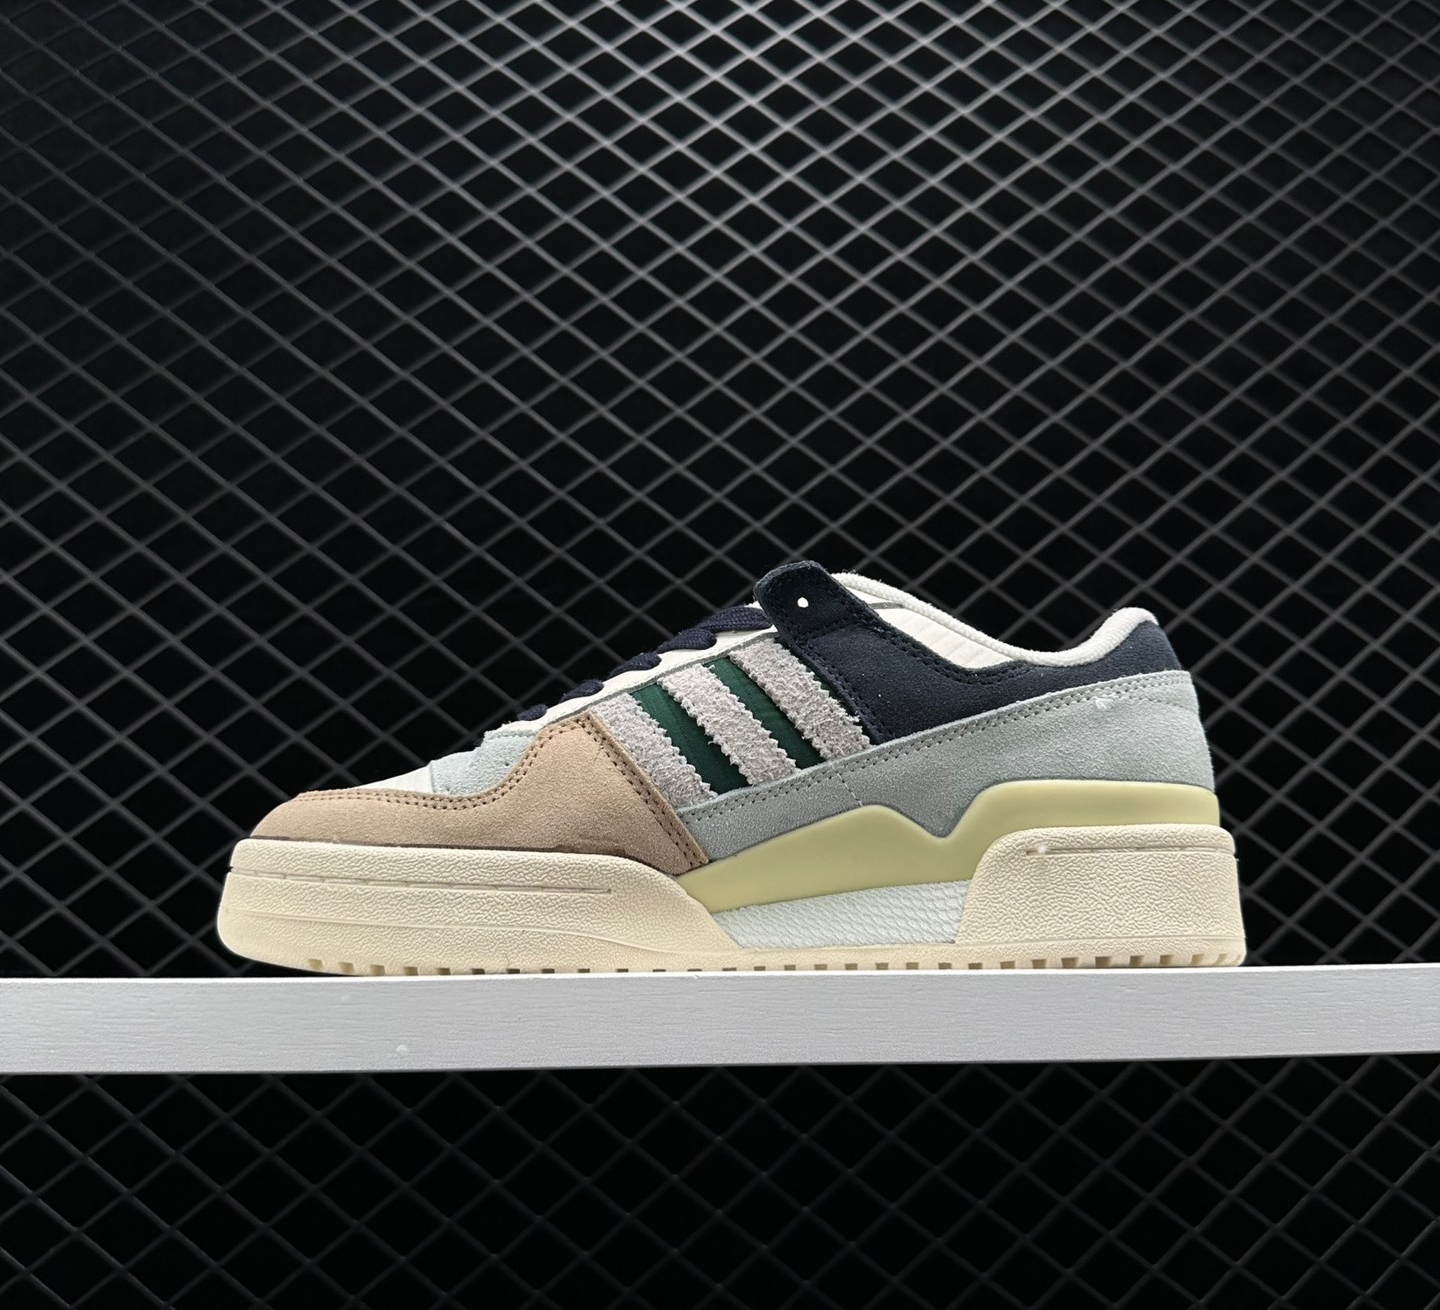 Adidas Forum 84 Low 'Beige Navy Green' GW4332 - Classic Sneakers for Men